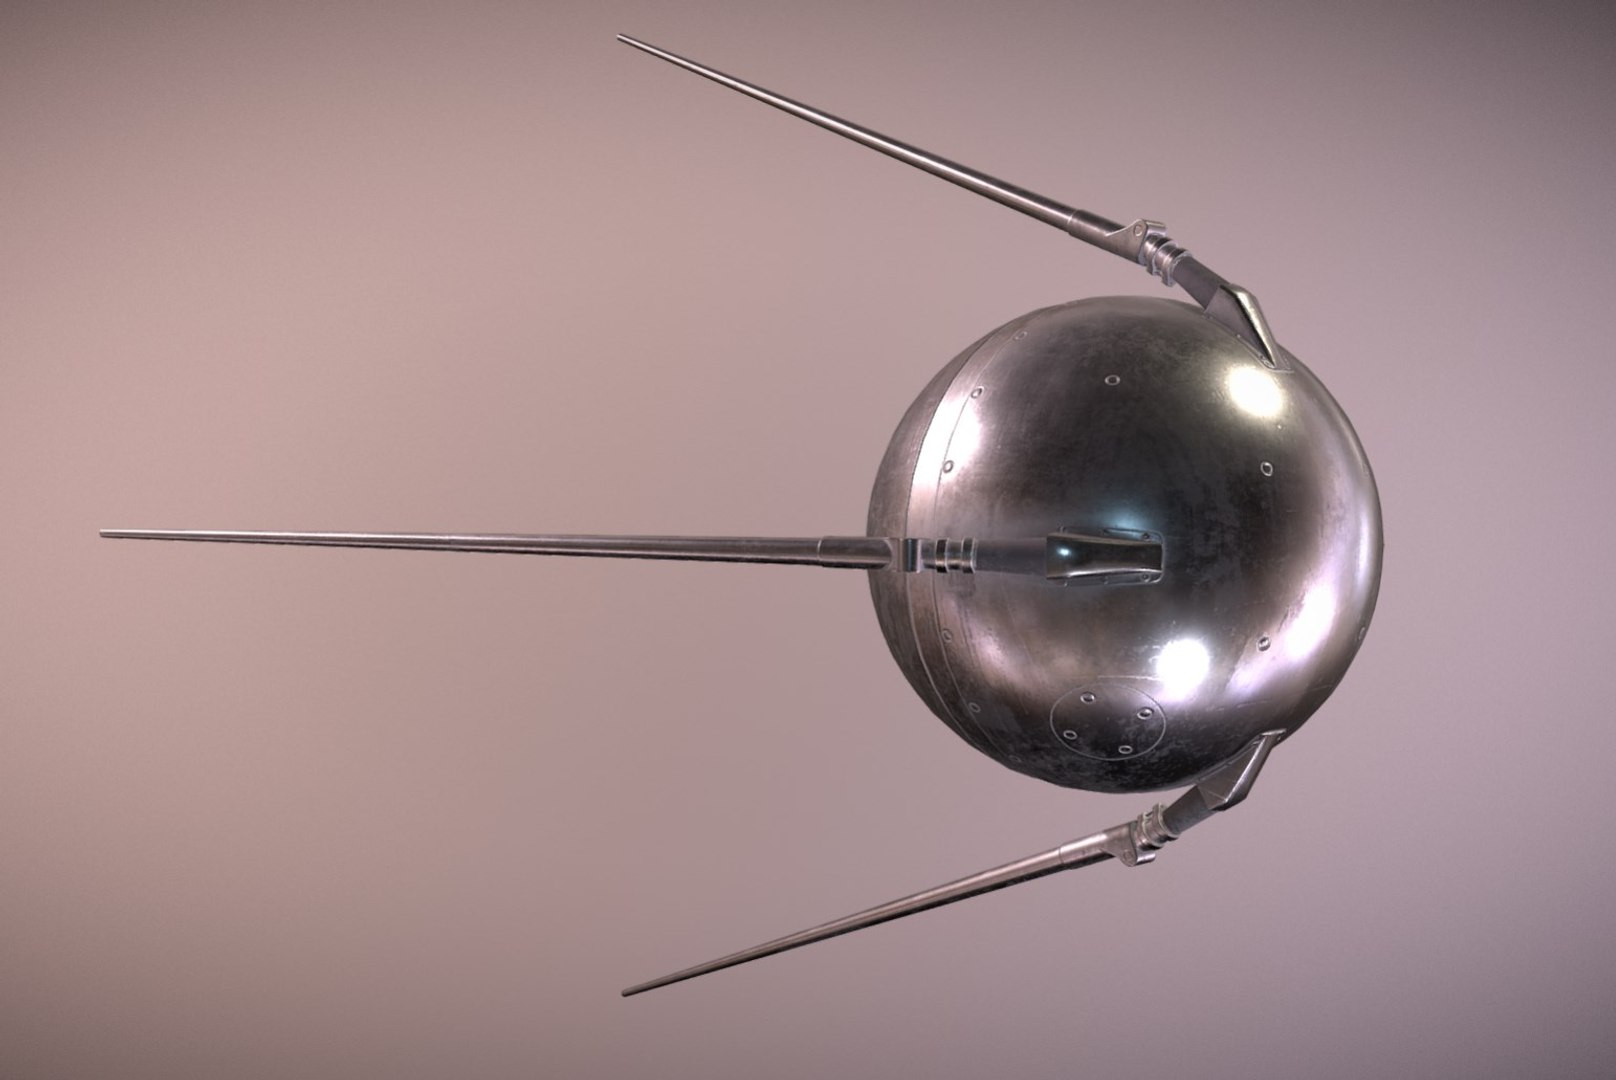 Первый спутник картинка. Спутник земли ПС-1. Спутник-1 искусственный Спутник. Искусственный Спутник земли Спутник-1. Первый искусственный Спутник 1957 г.